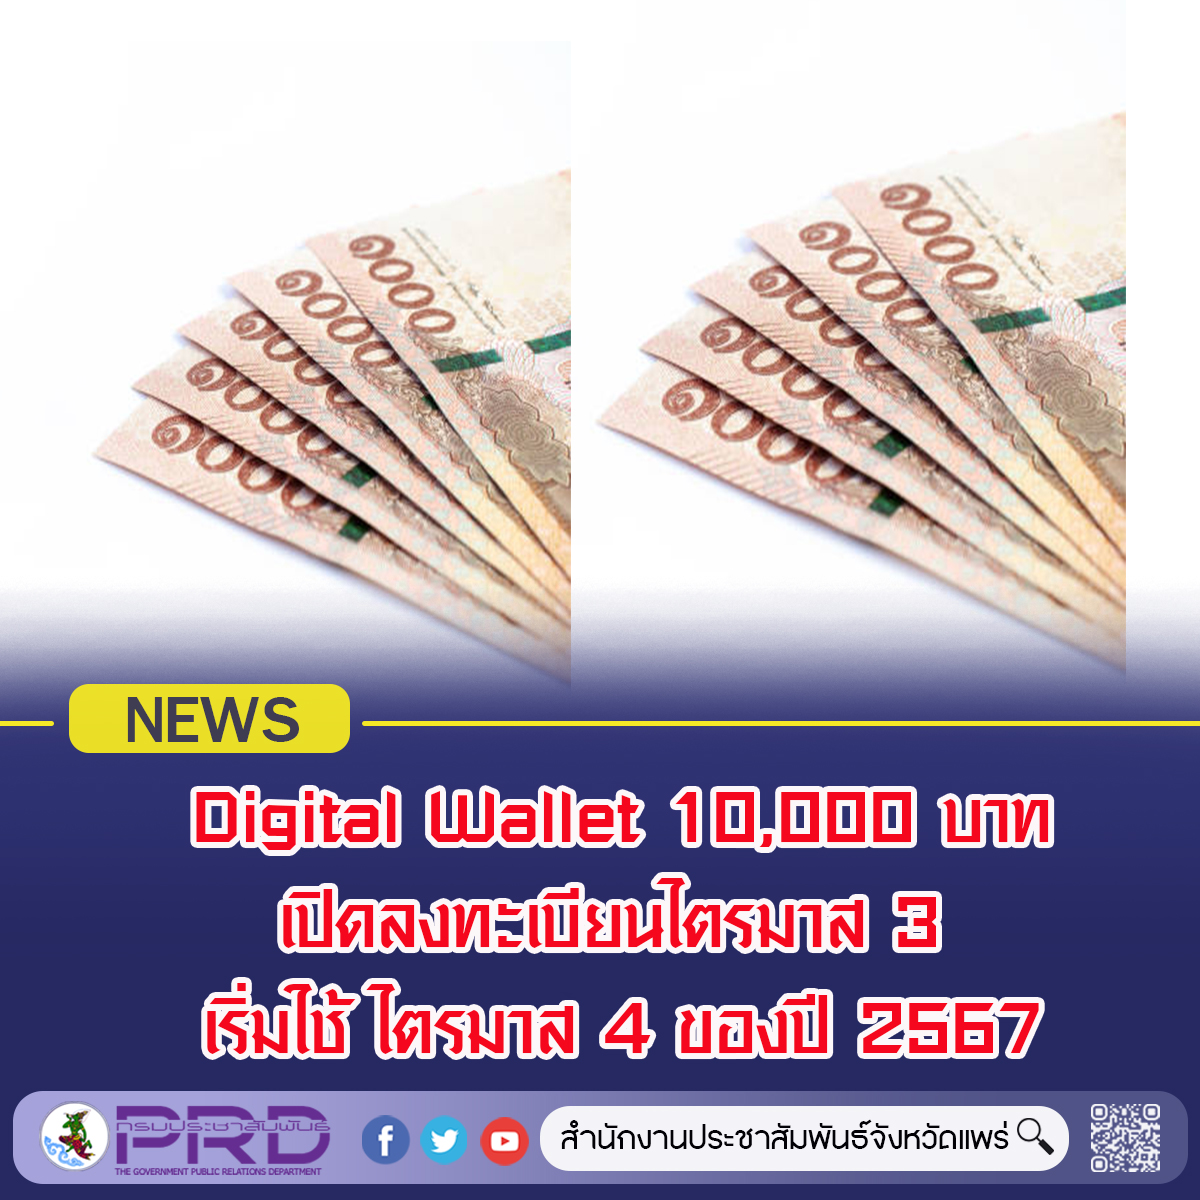 ความคืบหน้า เงิน 10,000 บาท หรือ Digital Wallet คาดเปิดลงทะเบียนไตรมาส 3 เริ่มใช้ ไตรมาส 4 ของปี 2567